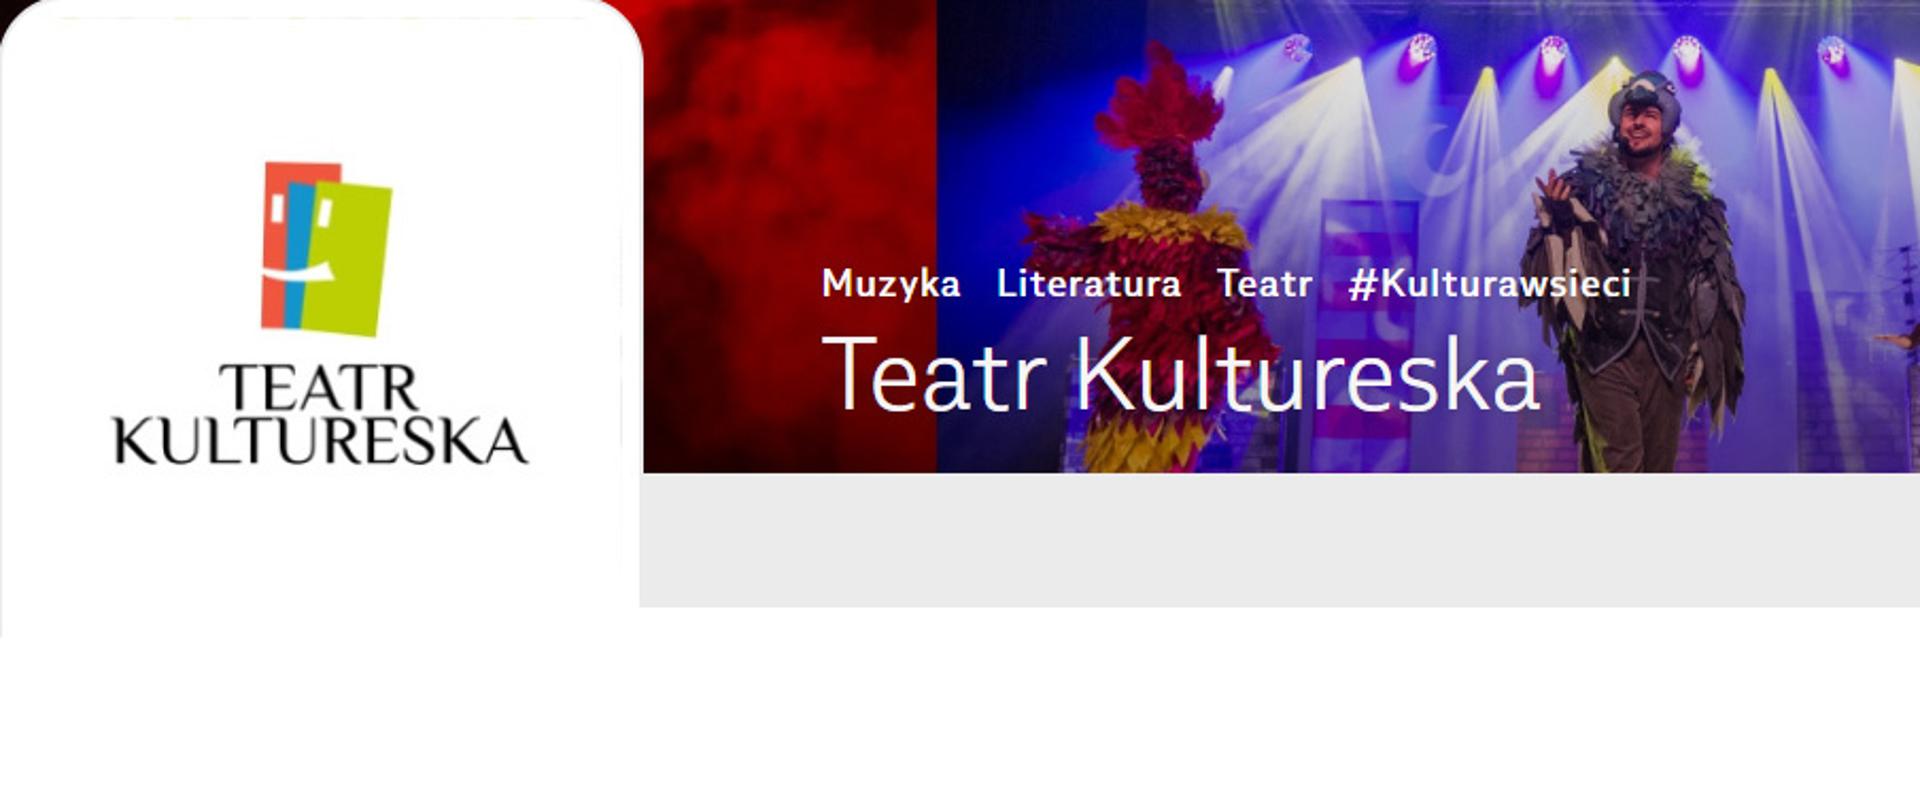 Teatr Kultureska